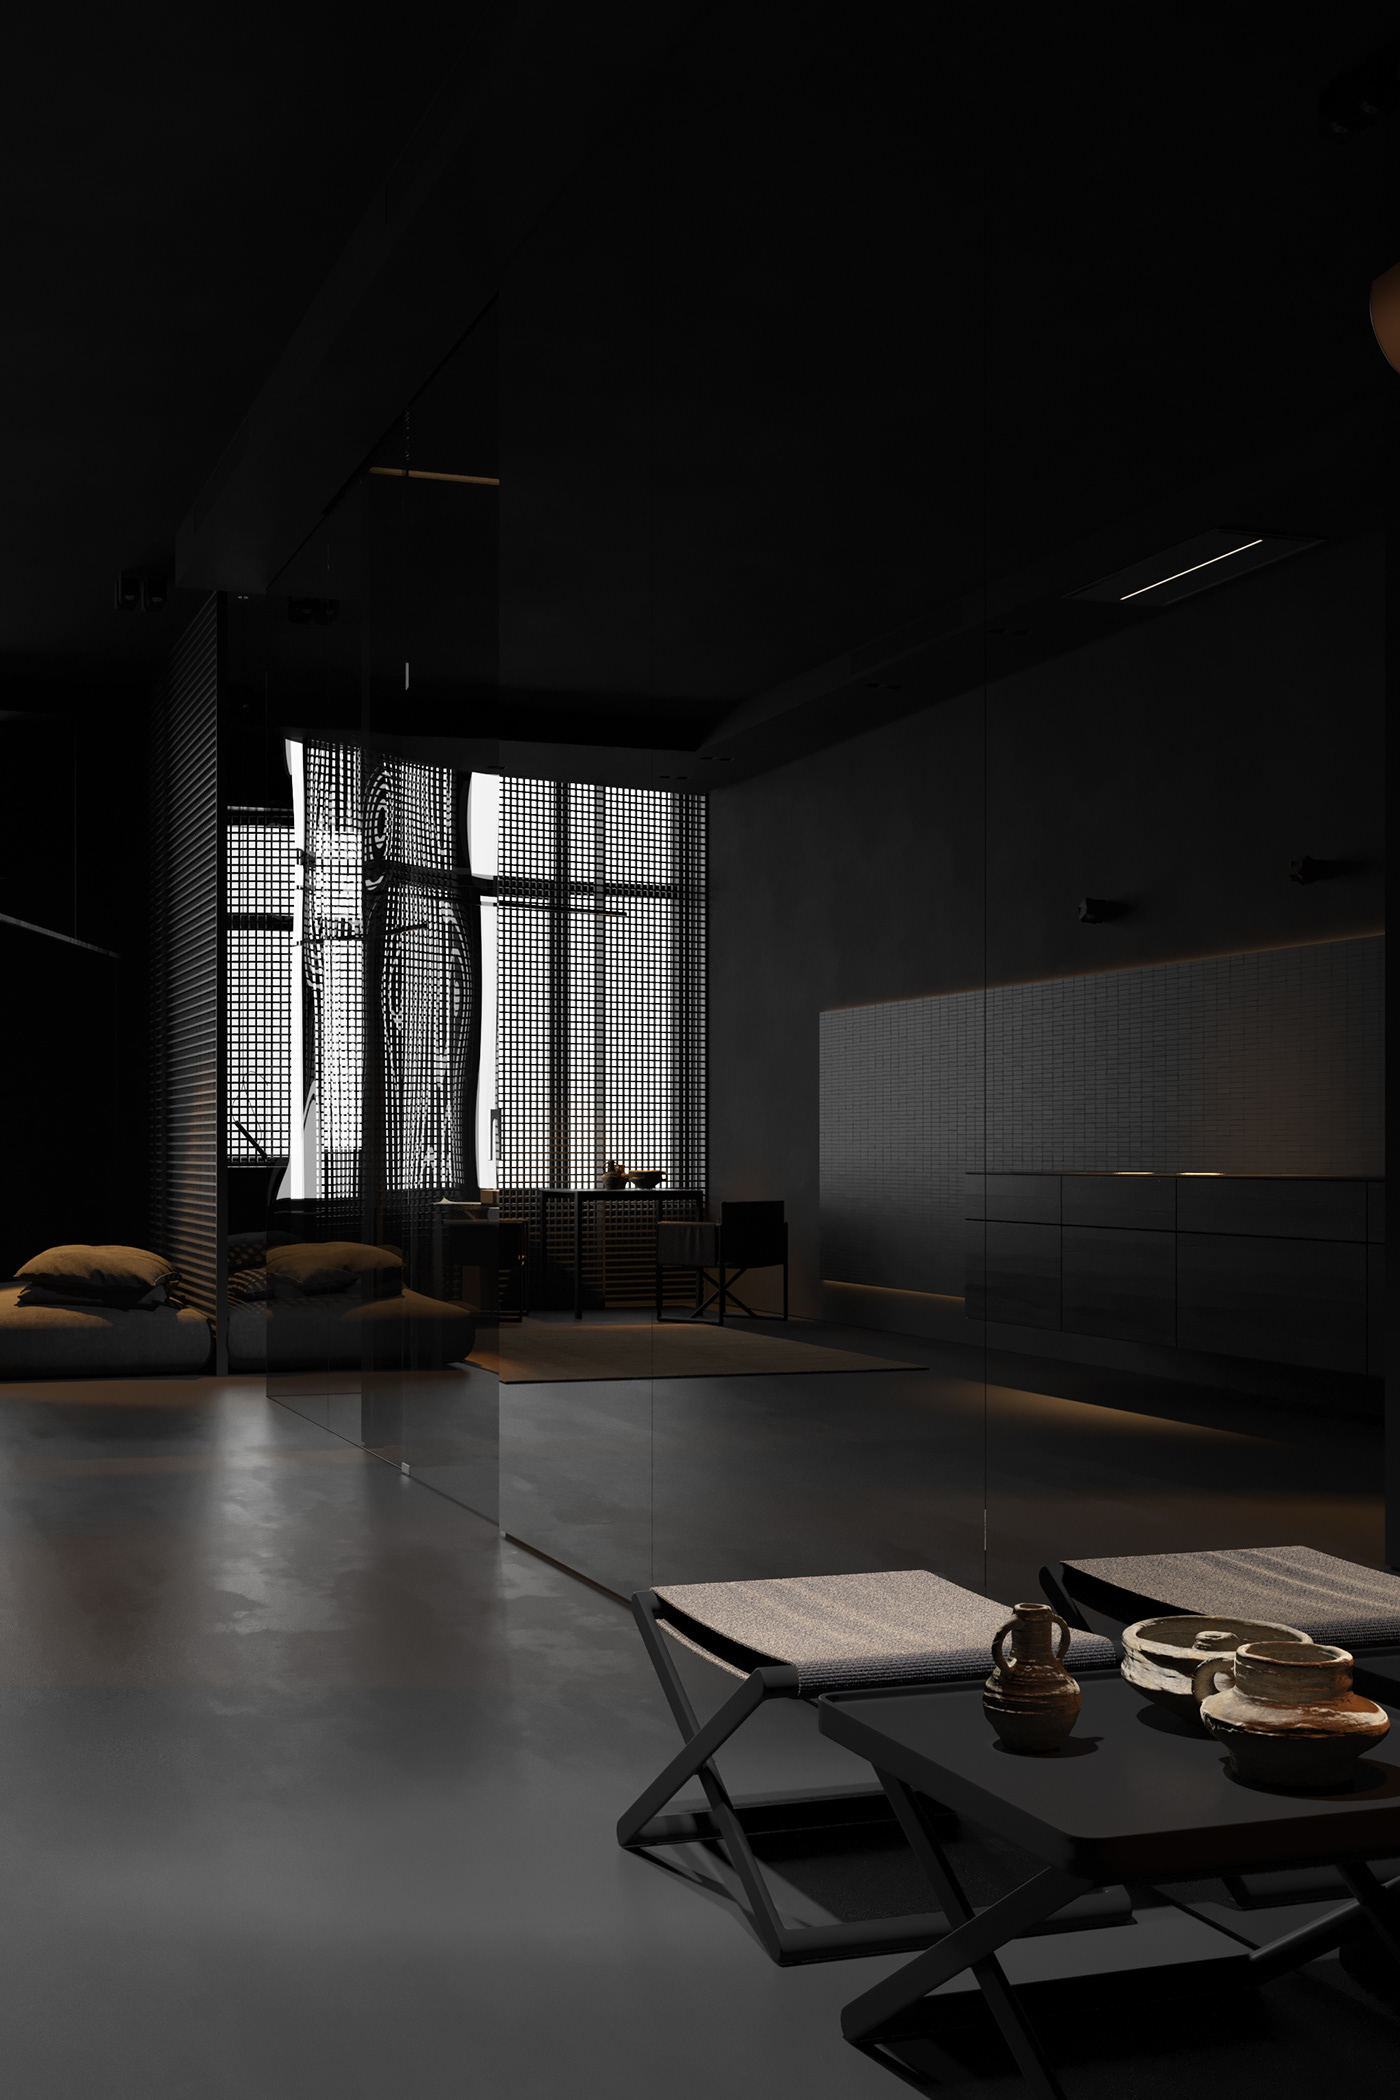 igor sirotov design Interior minimalist dark black interior bathroom kitchen kiev dubai